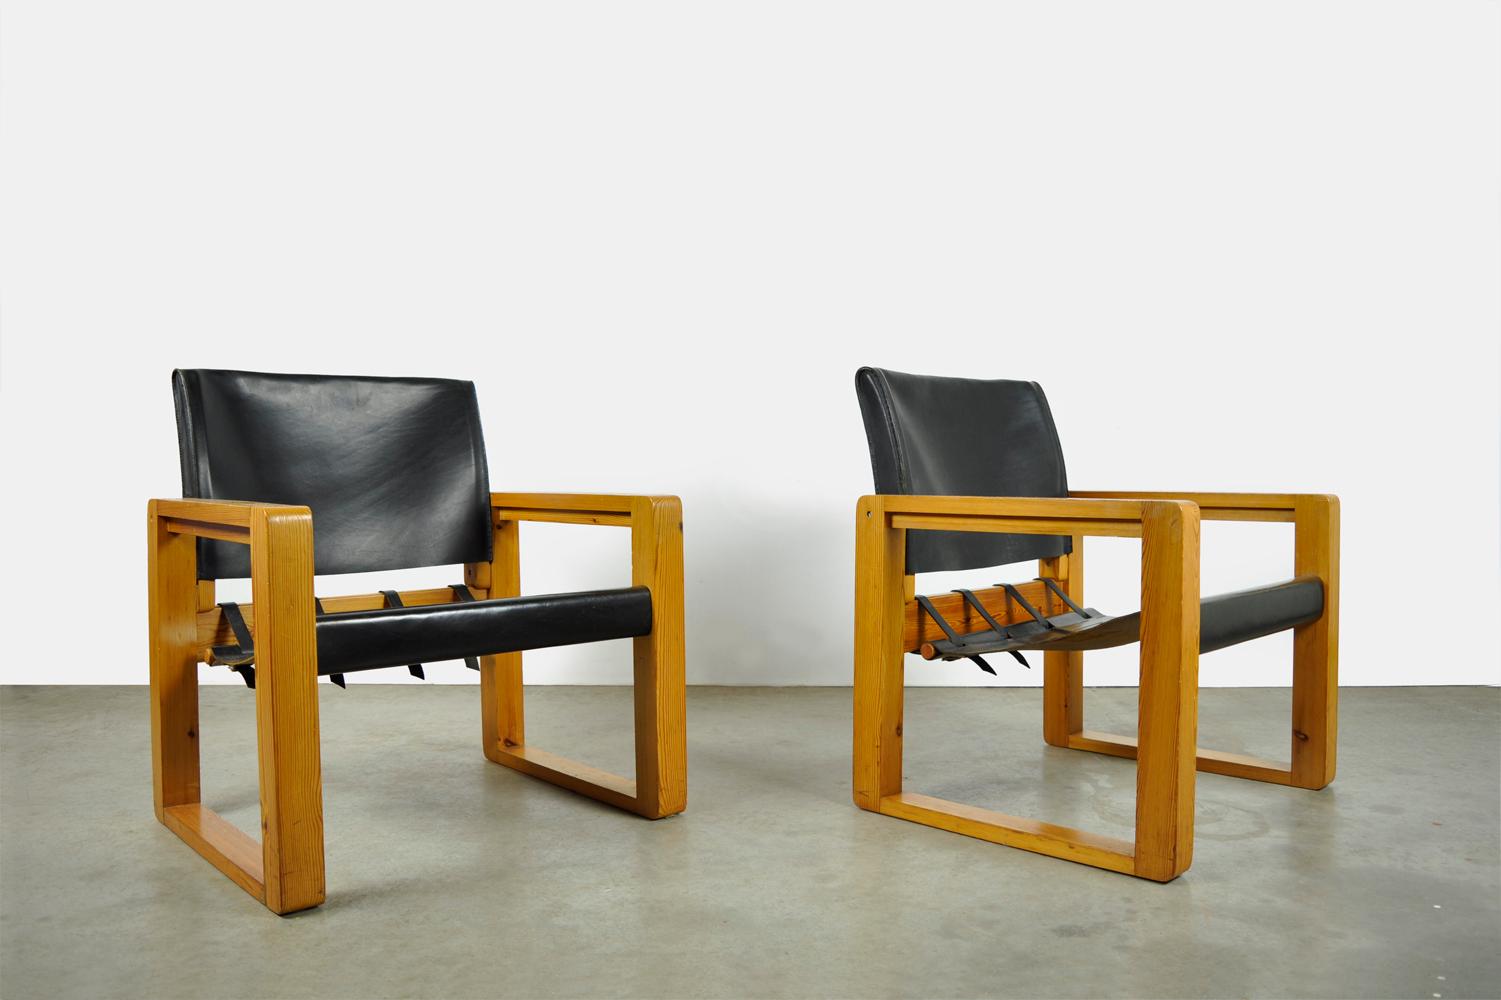 Vintage Scandinavian safari lounge armchair, 1970s. Les fauteuils robustes sont dotés d'un cadre en épicéa massif entre lequel est tendu le siège en cuir de selle noir. Le dossier en cuir est glissé sur un cadre. Les sangles en cuir au dos du siège